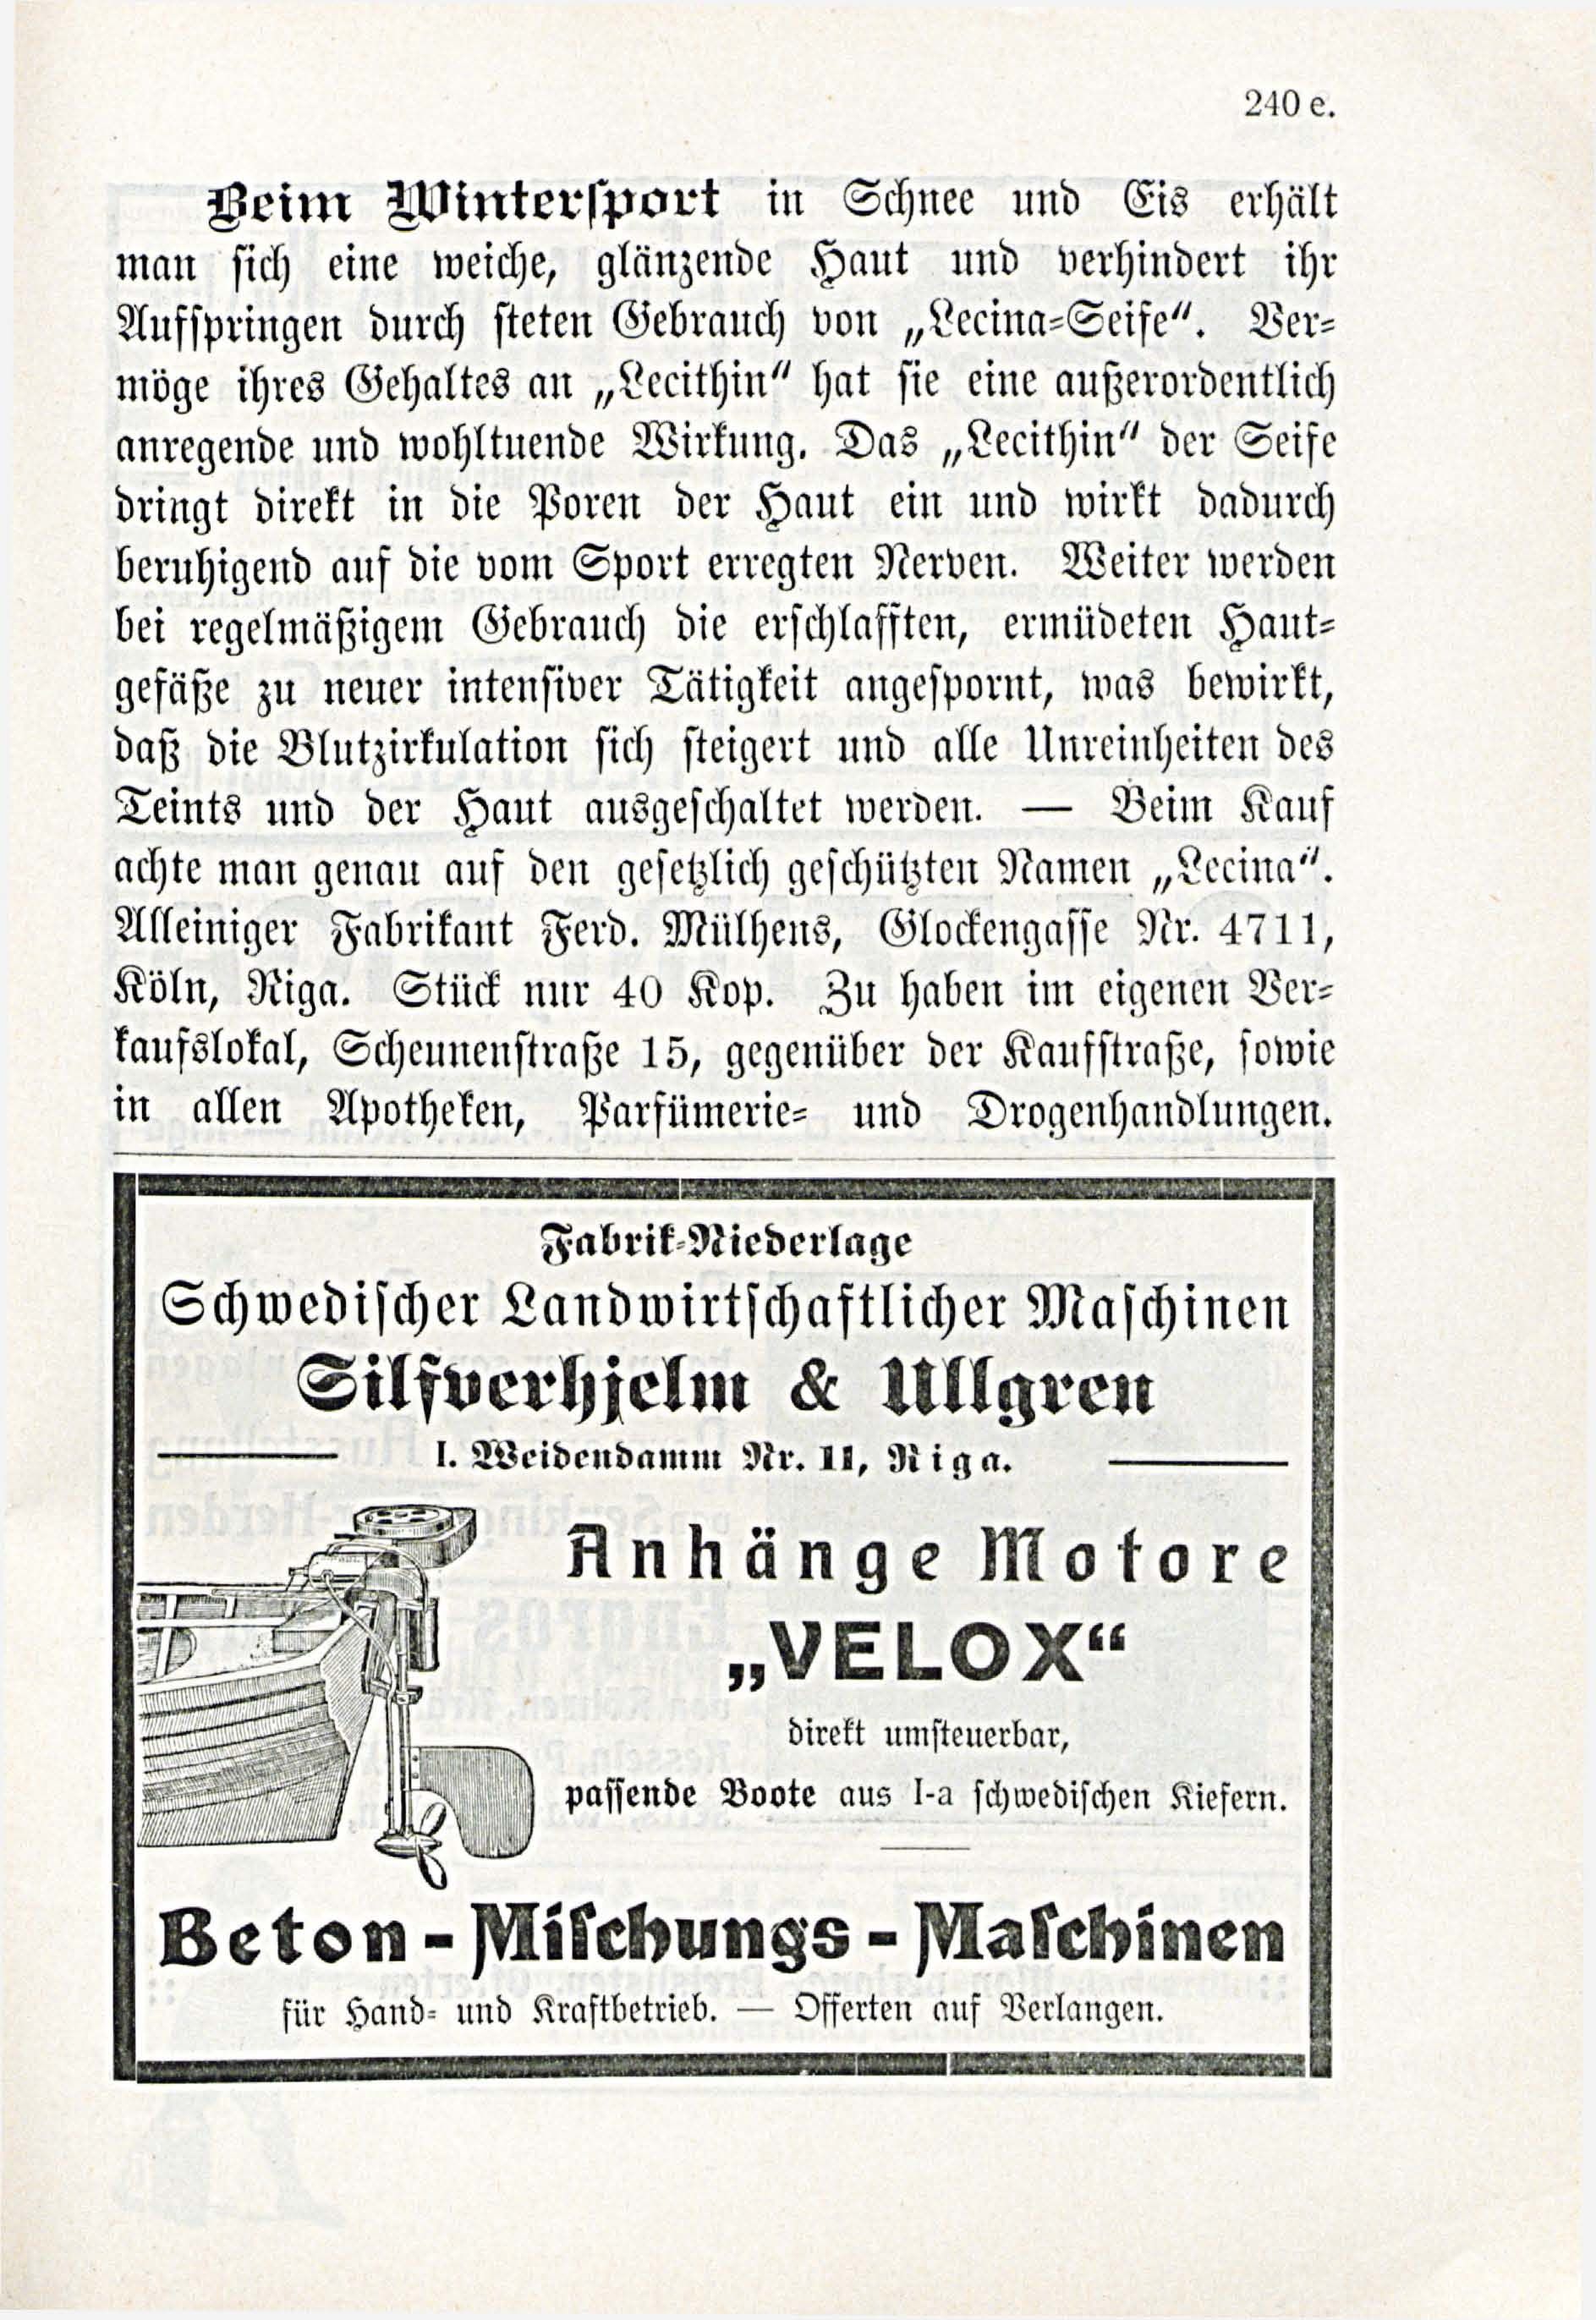 Deutsche Monatsschrift für Russland [3/03] (1914) | 87. (241) Main body of text